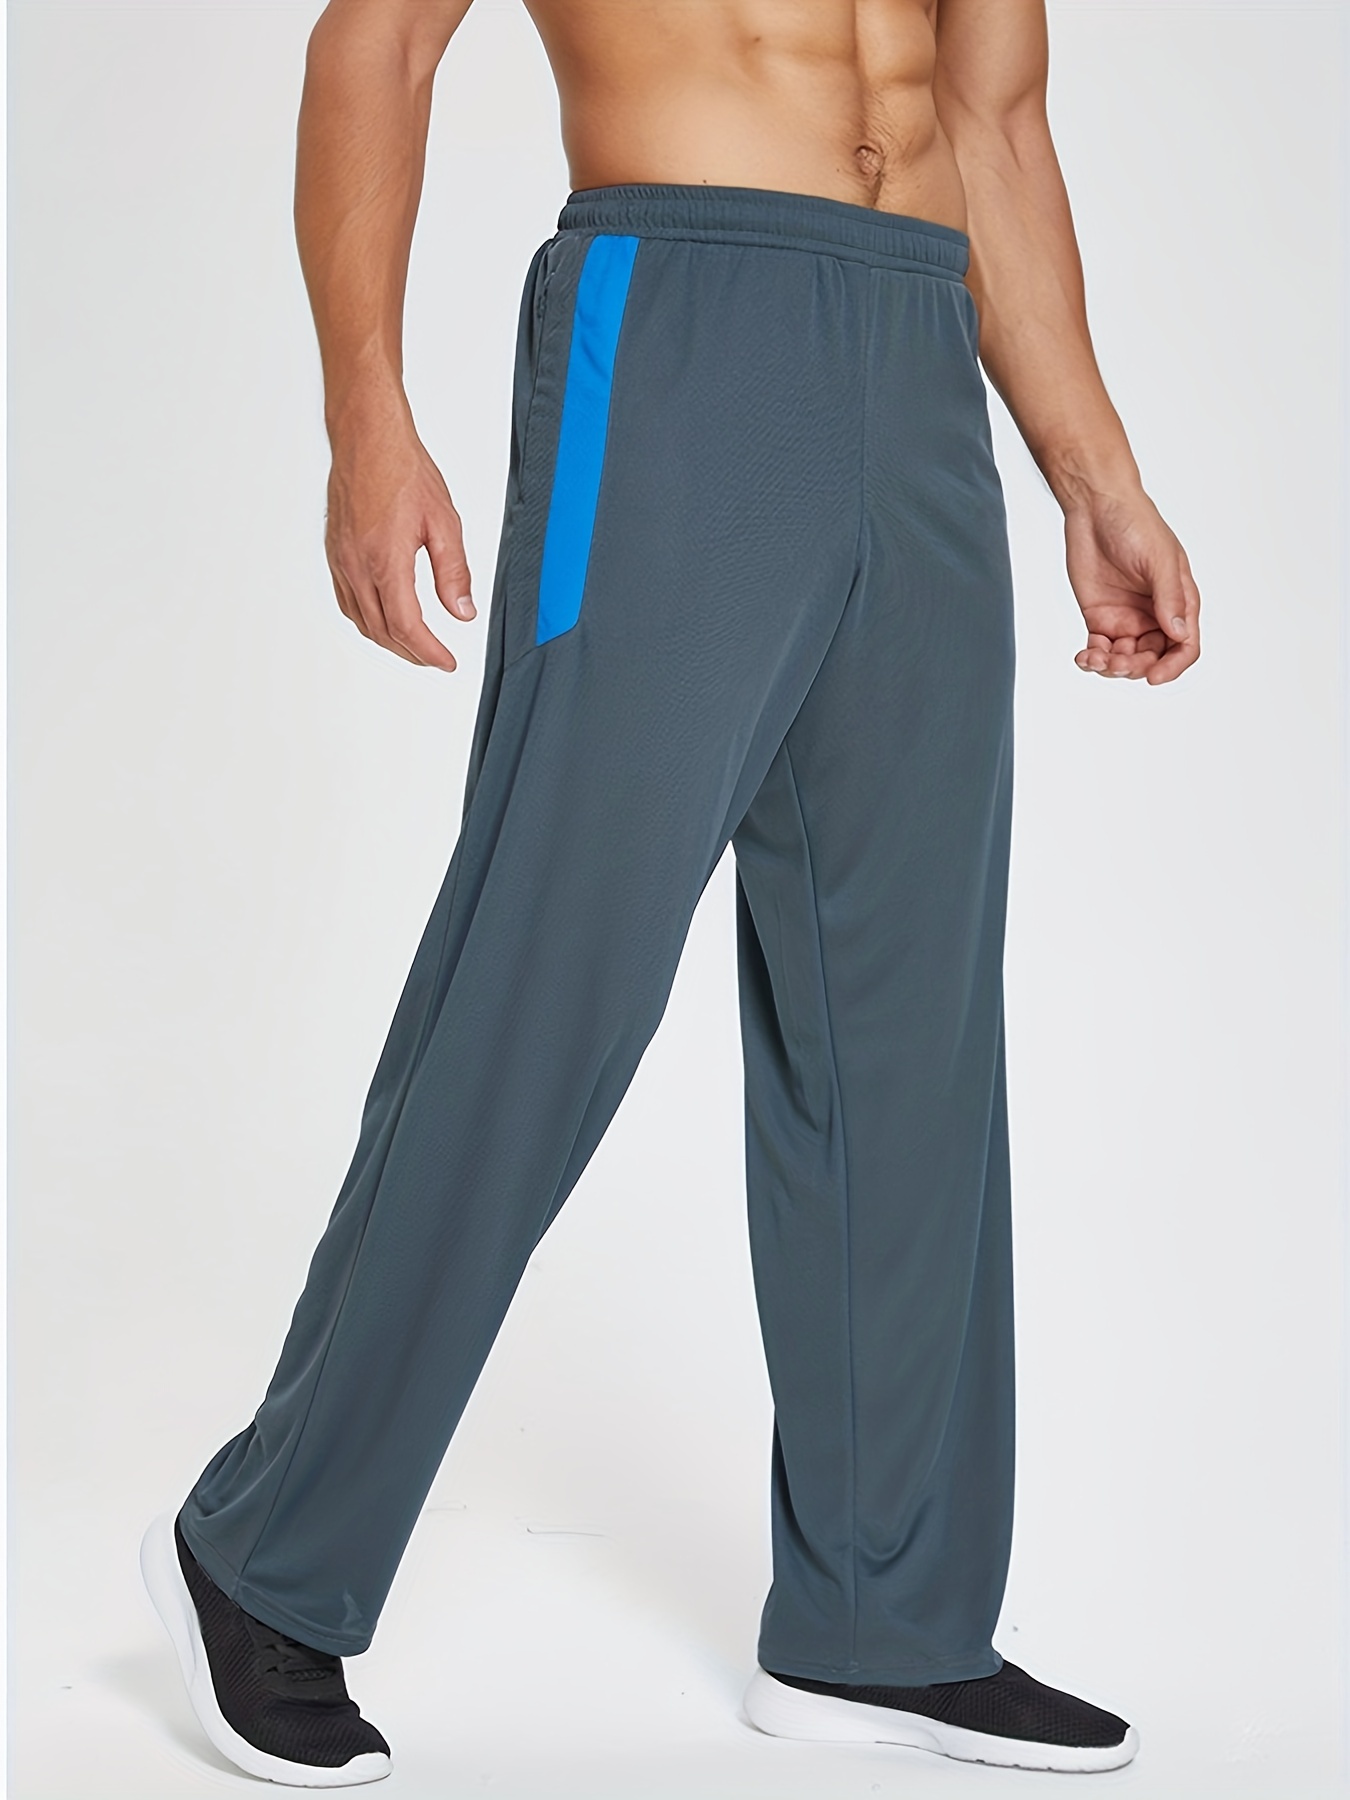 Men's Athletic Sweatpants Pockets Comfortable Workout Pants - Temu